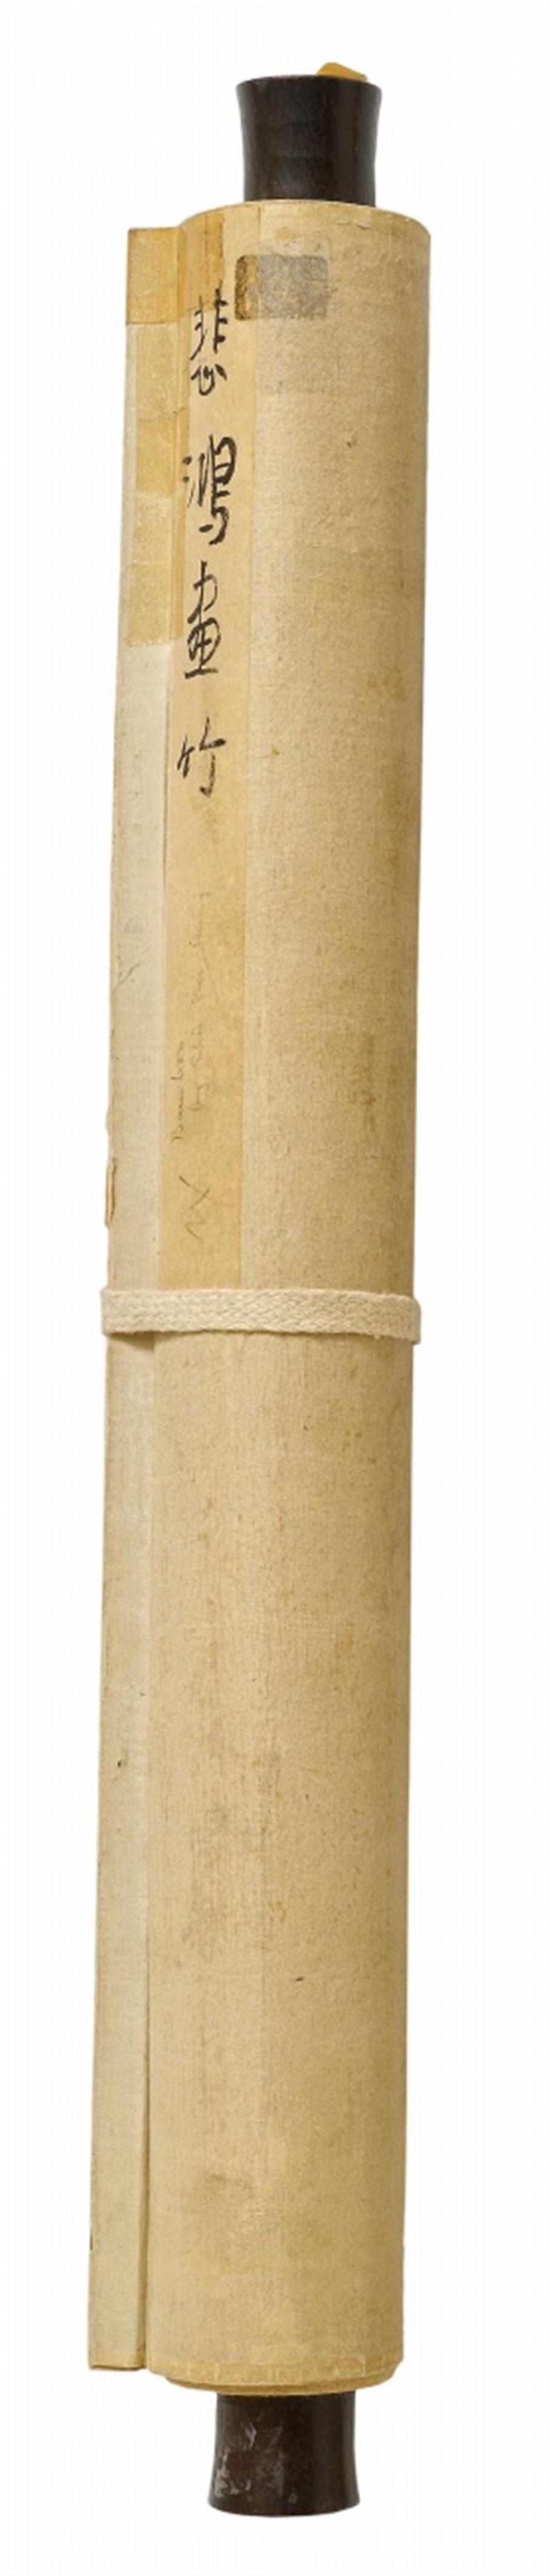 Xu Beihong - Bambus. Hängerolle. Tusche auf Papier. Aufschrift, datiert: 1933, sign.: Beihong und Siegel: Beihong zhi hua. - image-3